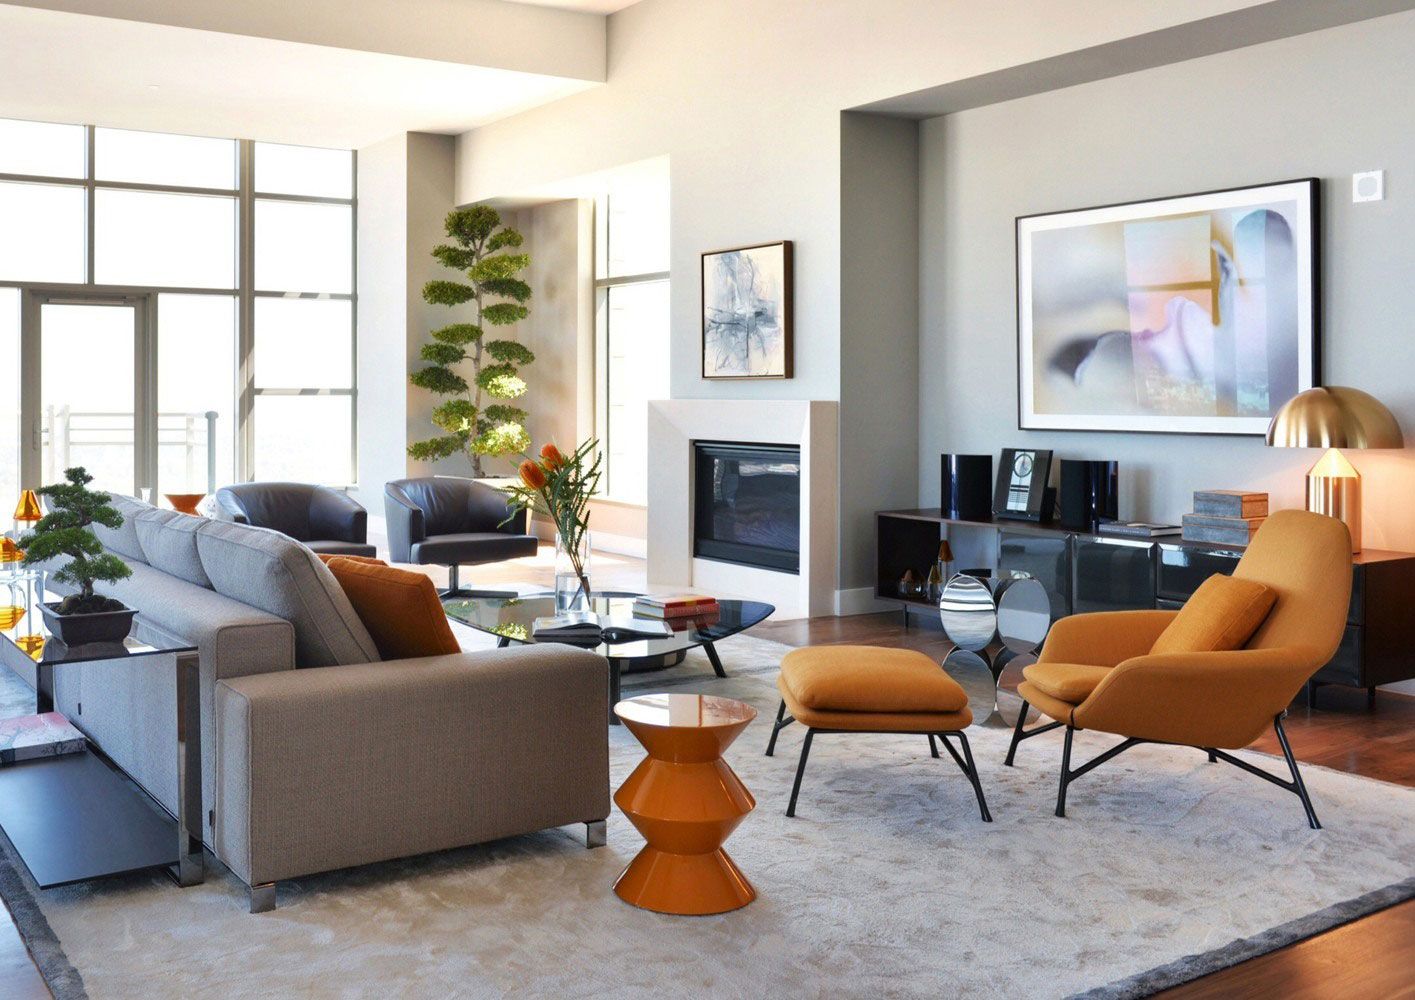 Những kiểu bố trí ghế sofa cho phòng khách hiện đại